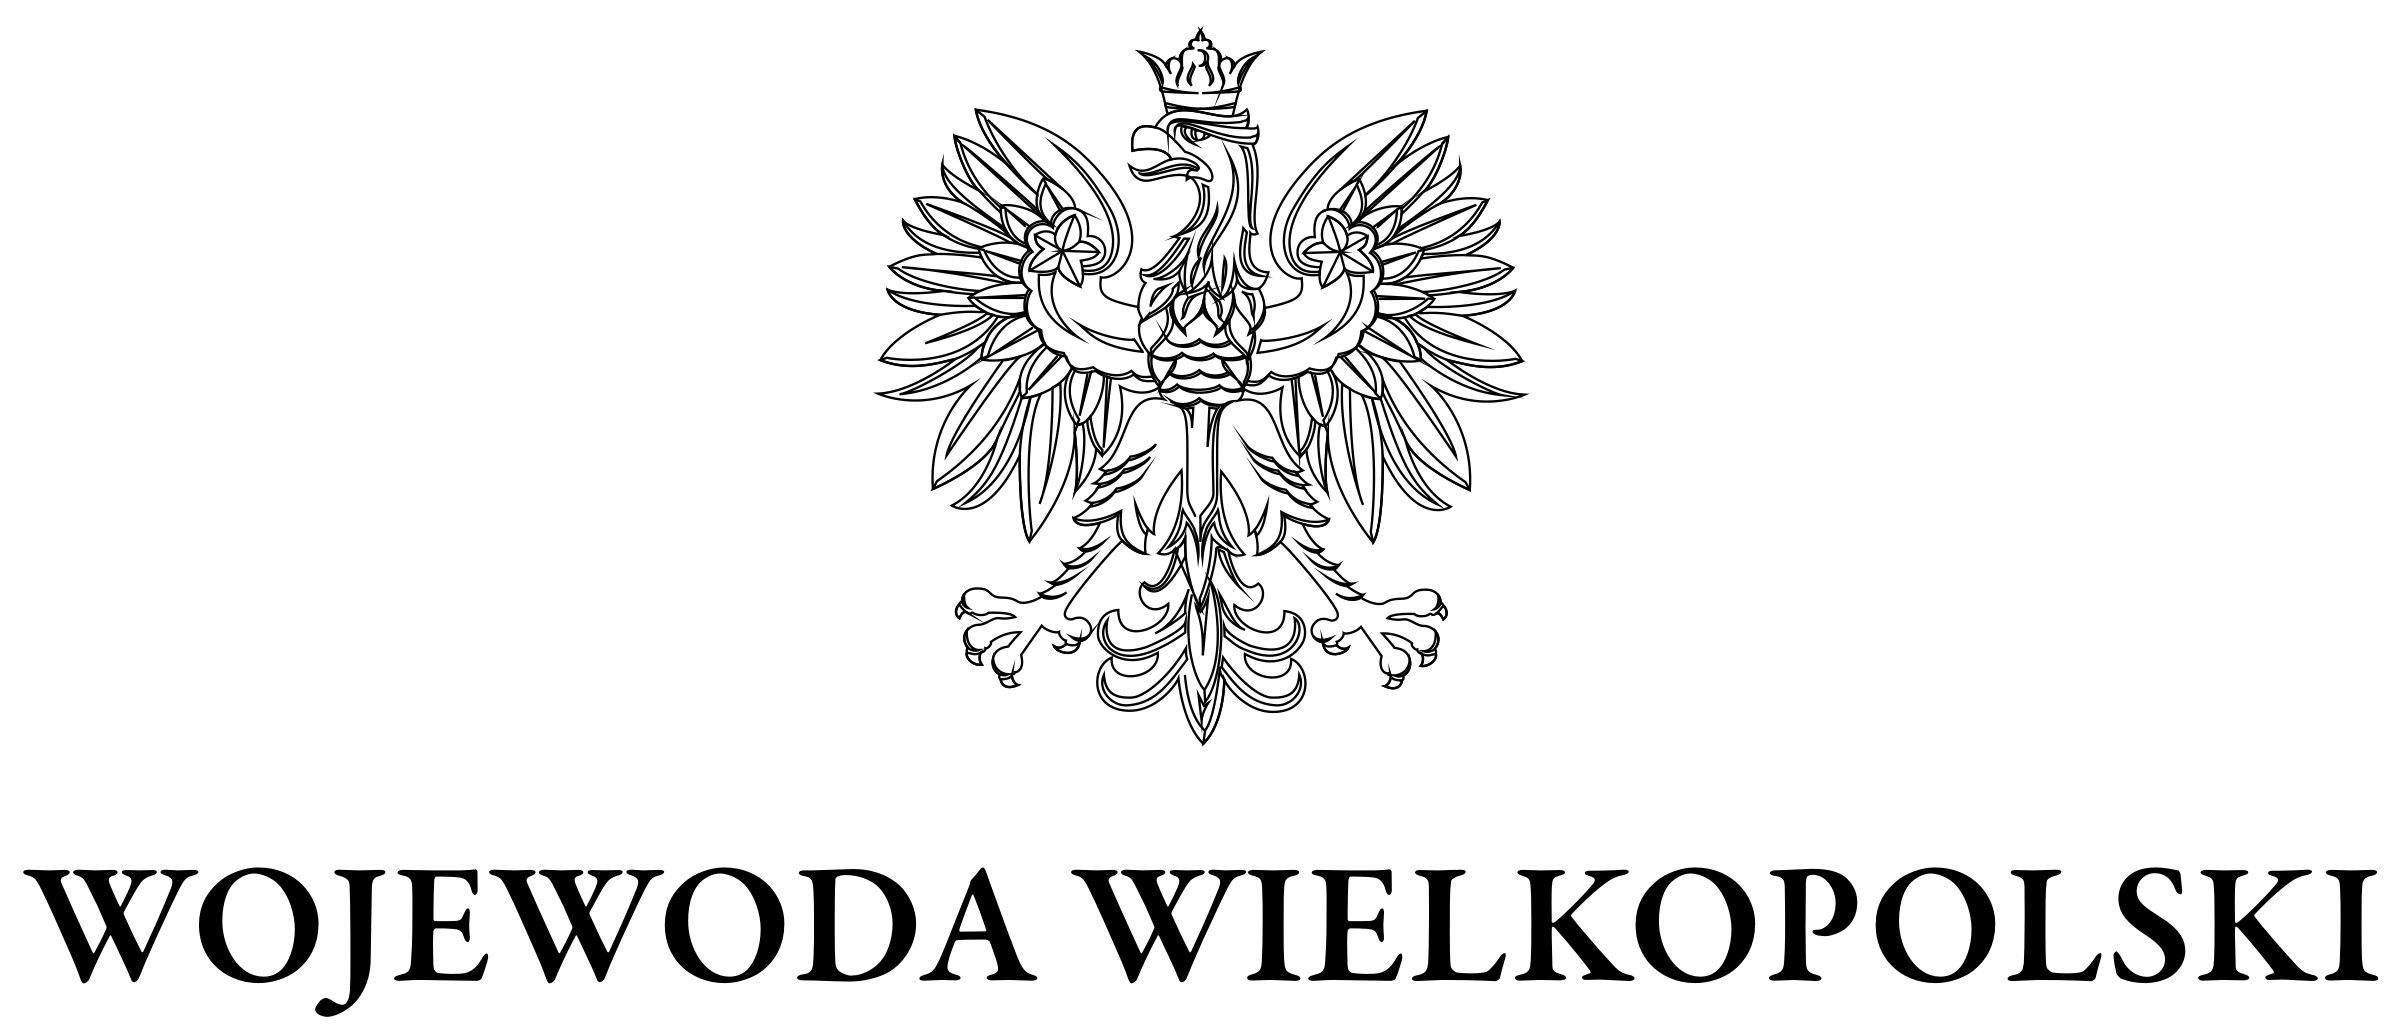 Decyzją wojewody wielkopolskiego wprowadzono czasowe zawieszenie działalności dziennych placówek pomocowych